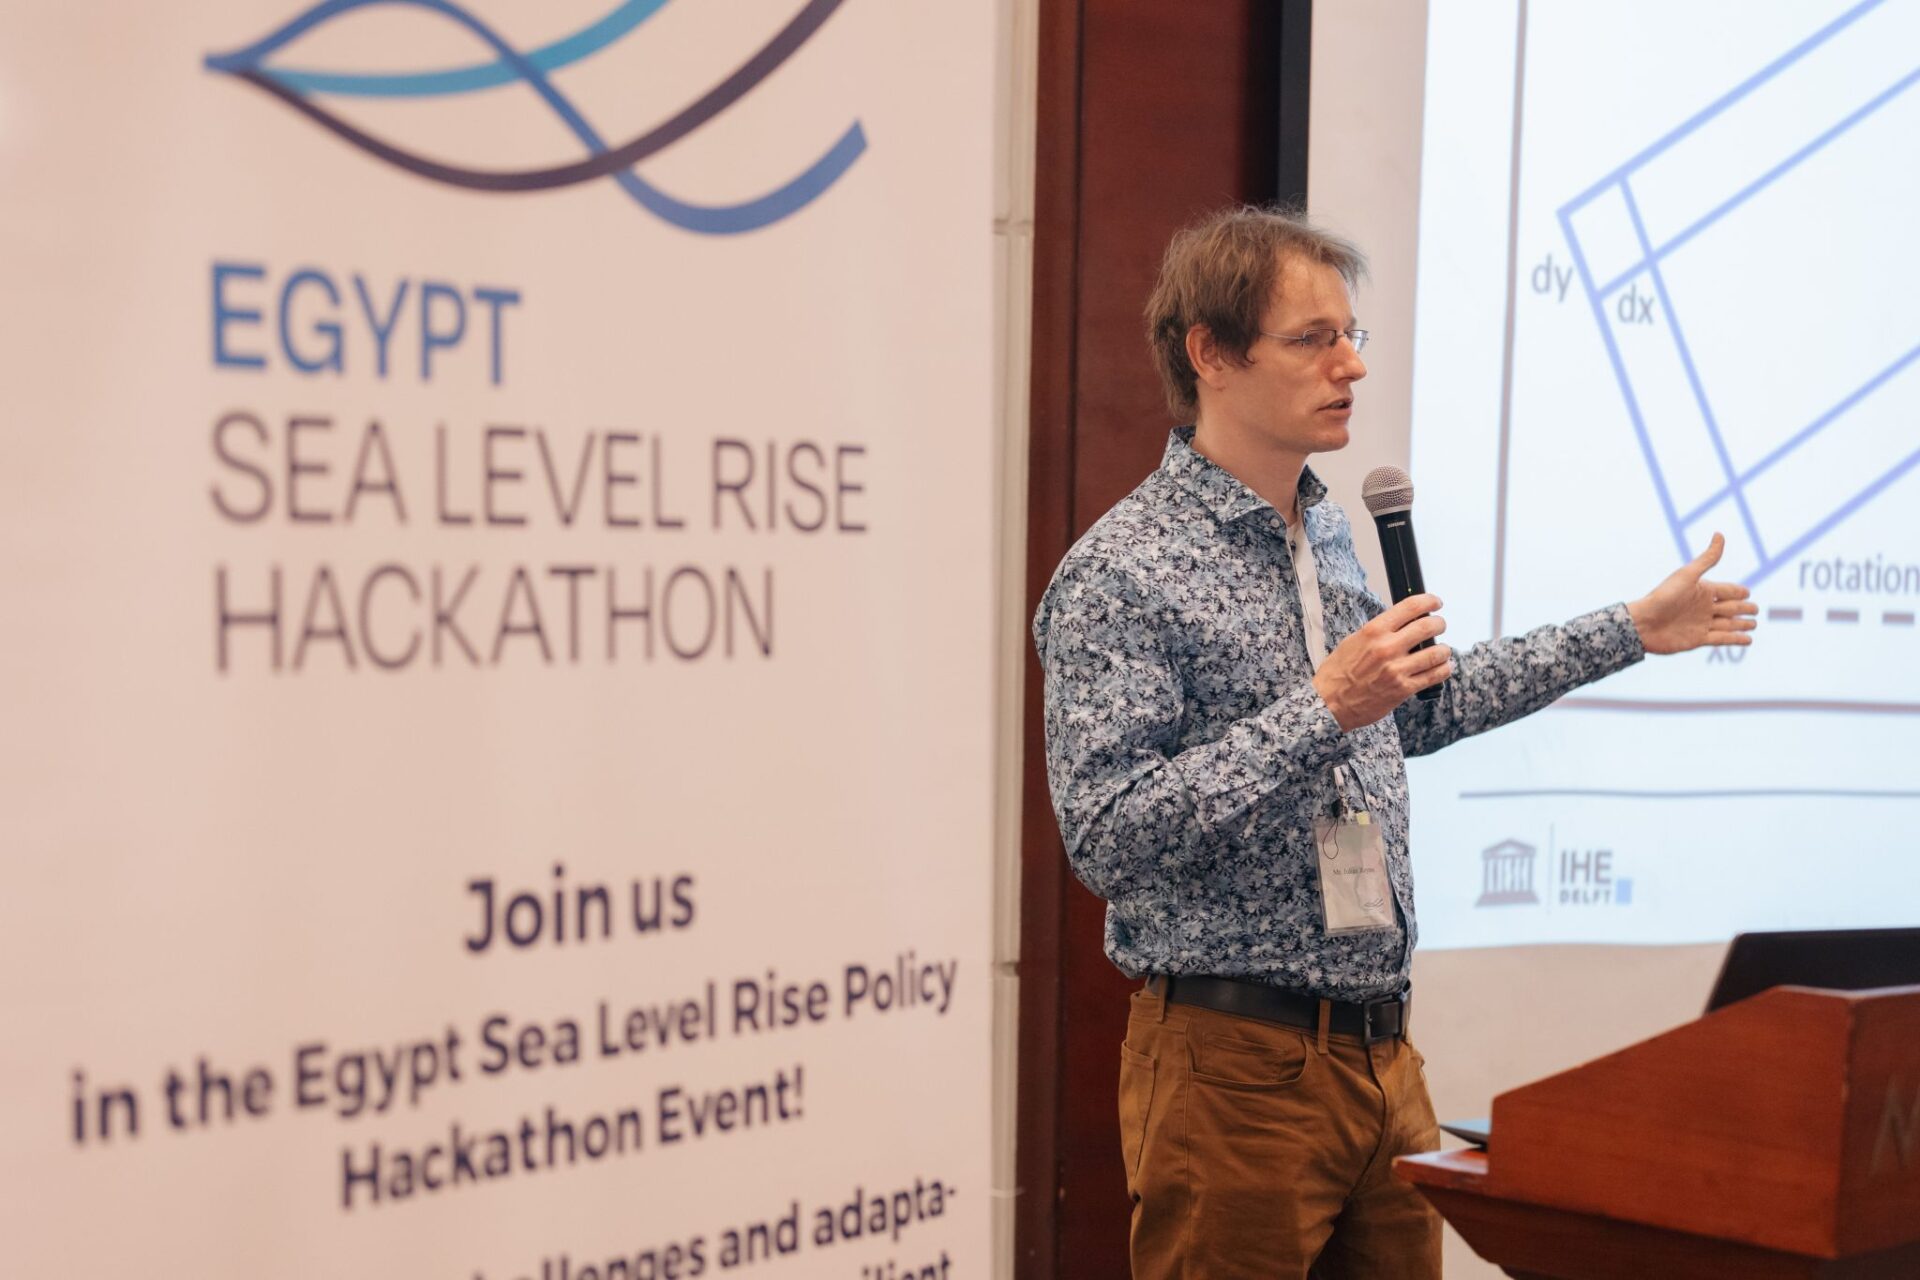 Egypt: Sea Level Rise Hackathon